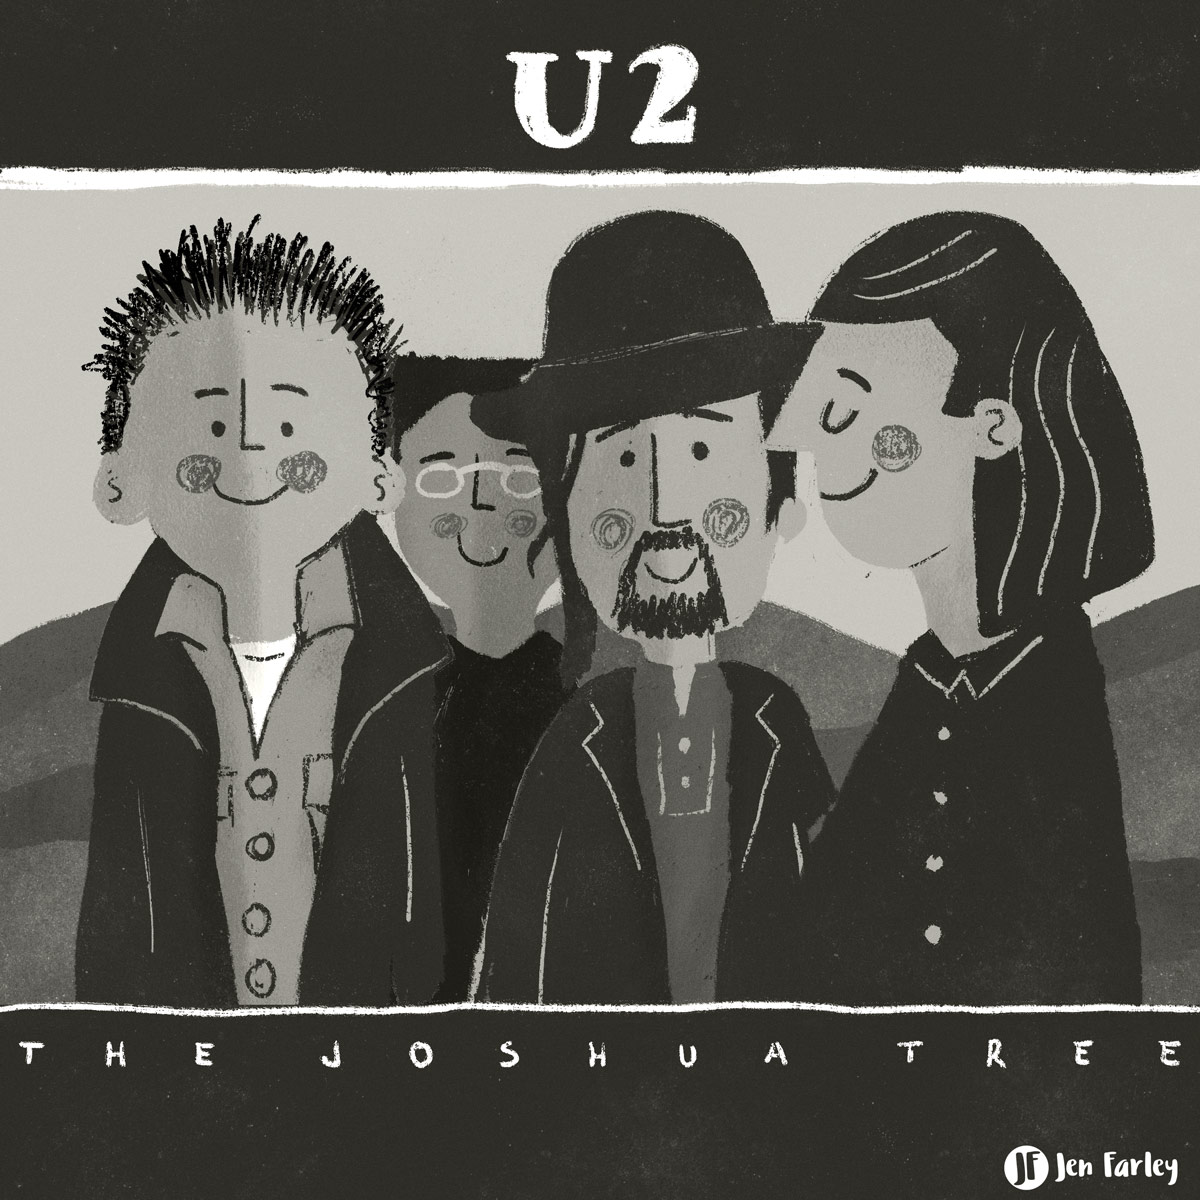 U2 The Joshua Tree Jennifer Farley